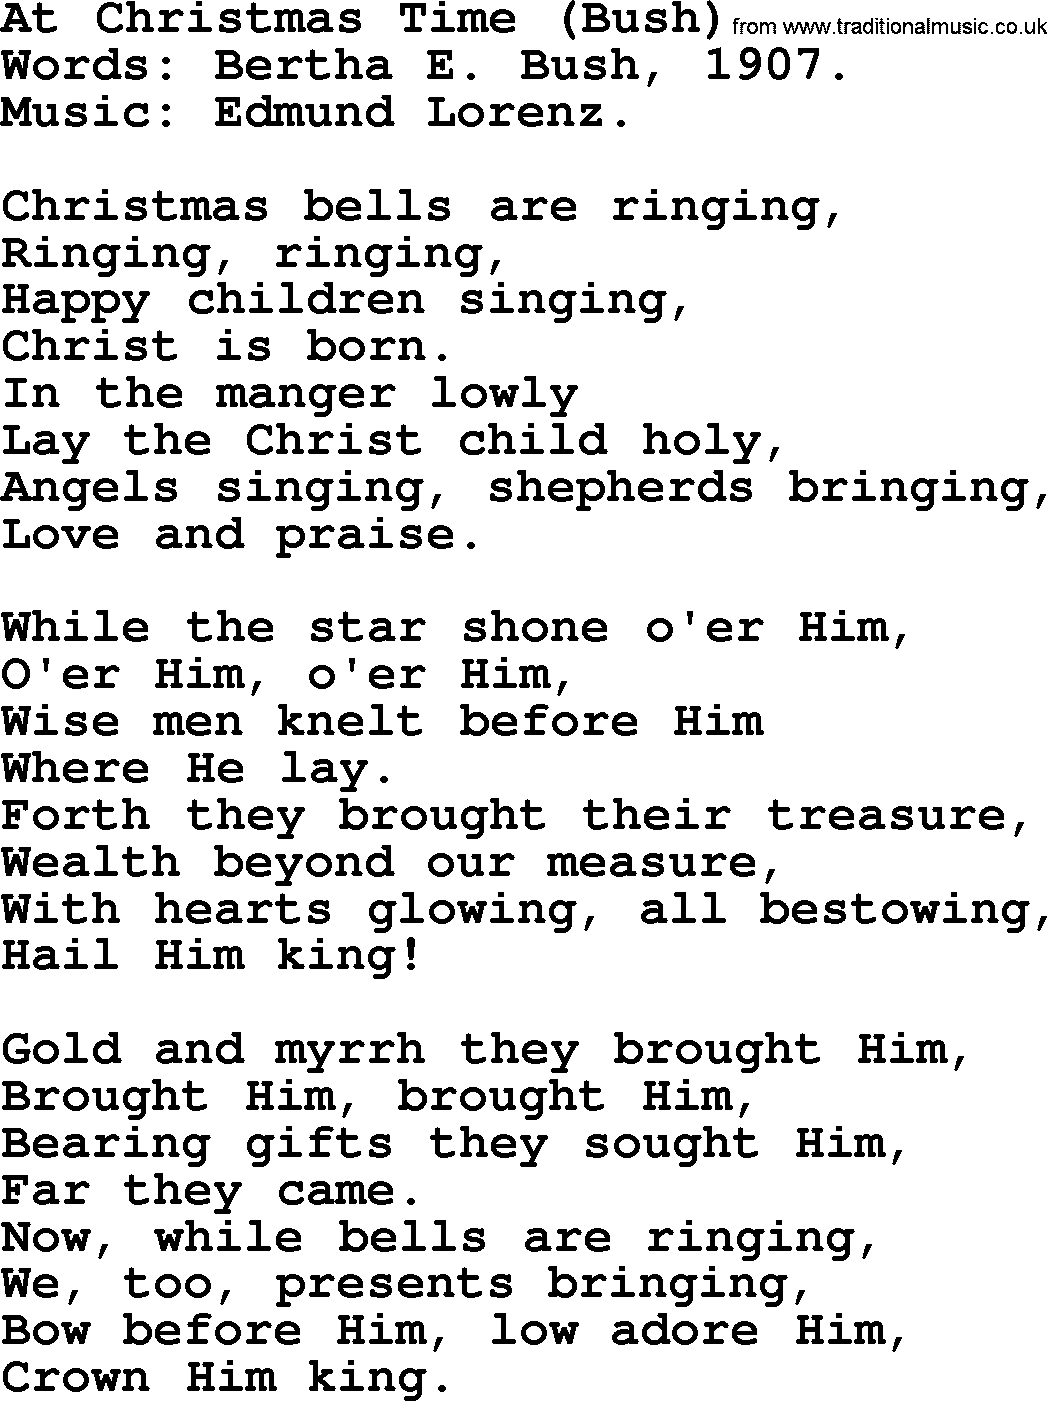 Christmas Hymns, Carols and Songs, title: At Christmas Time (bush), lyrics with PDF